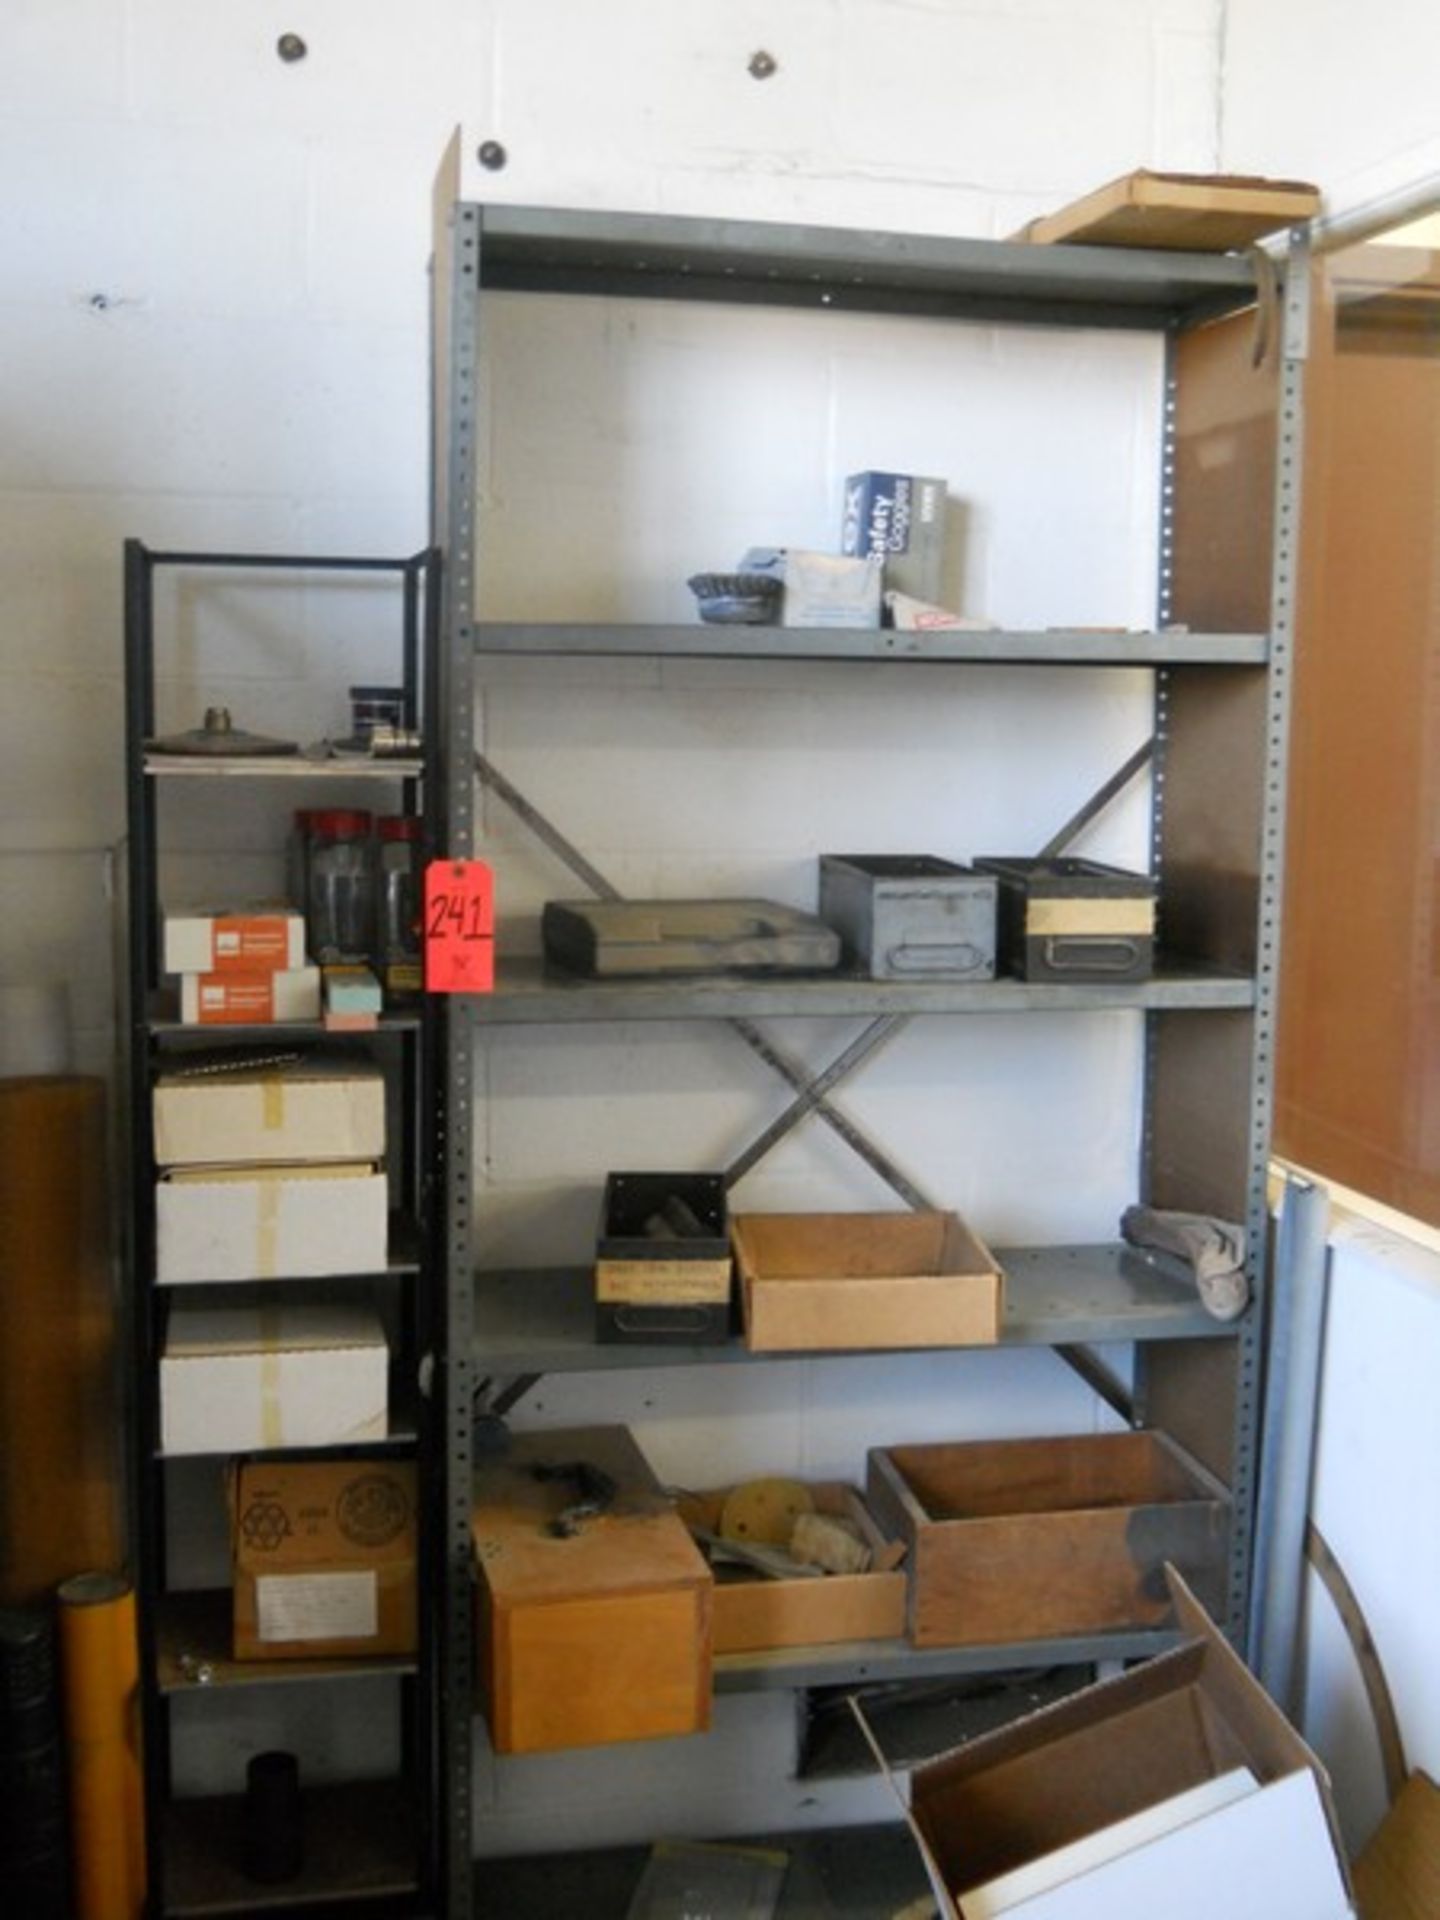 Lot - Shop Shelf Unit & Contents - Image 3 of 4